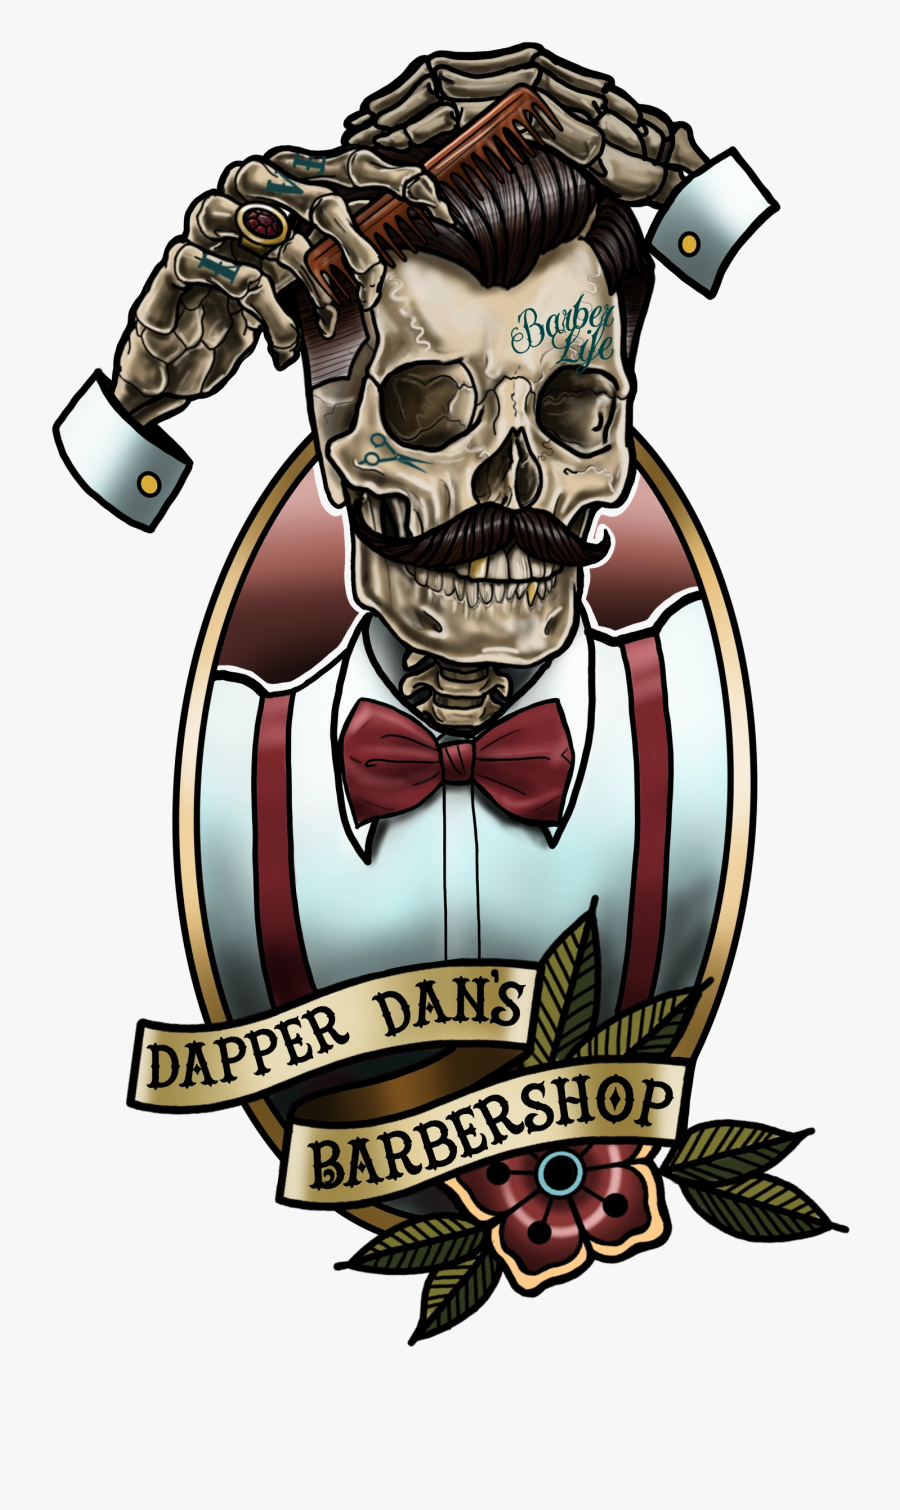 Dapper Dan"s Barbershop - Barber Shop Logo Hd, Transparent Clipart